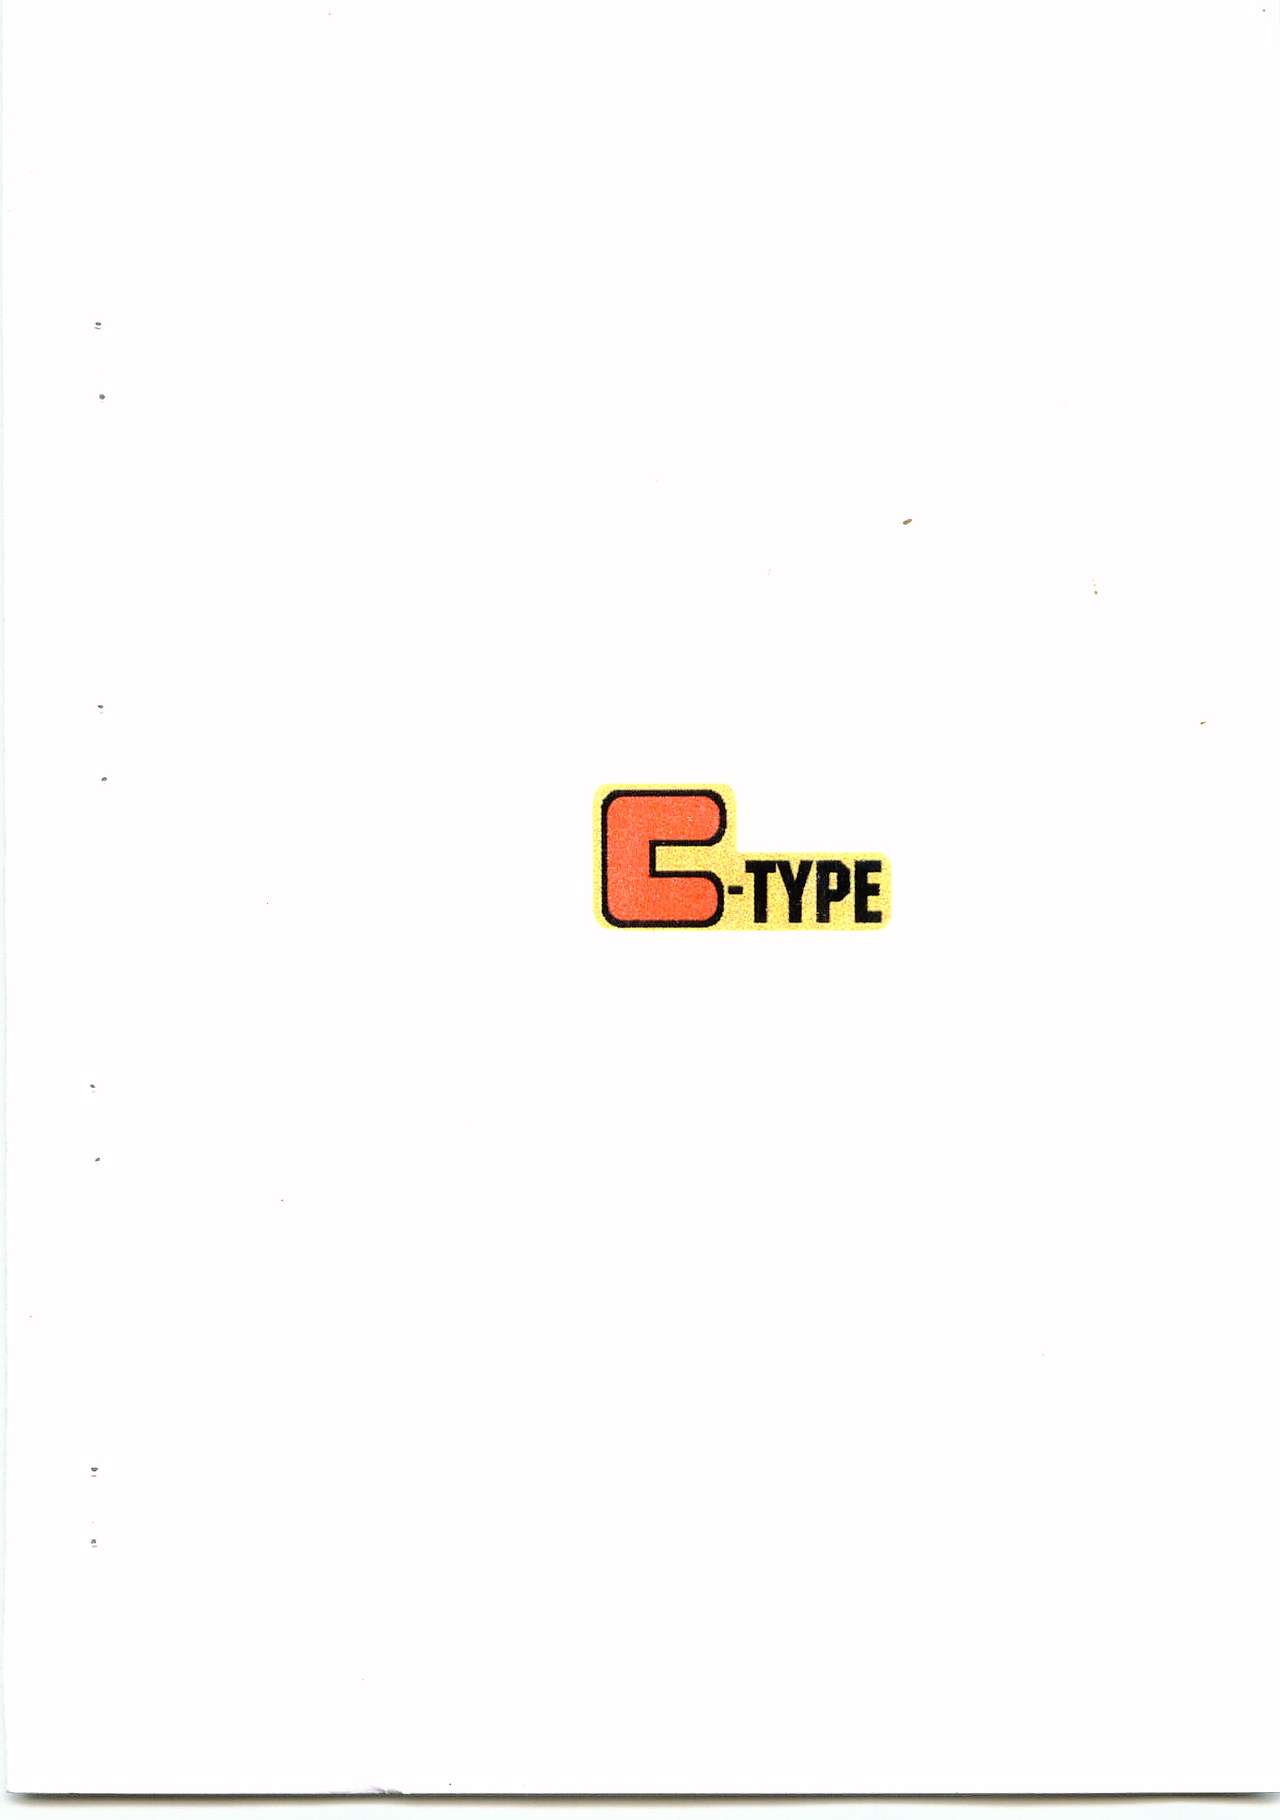 [C-type (出石十人)] C-TYPE コミック第1号 豪＆ニエミネン (爆走兄弟レッツ&ゴー!!)